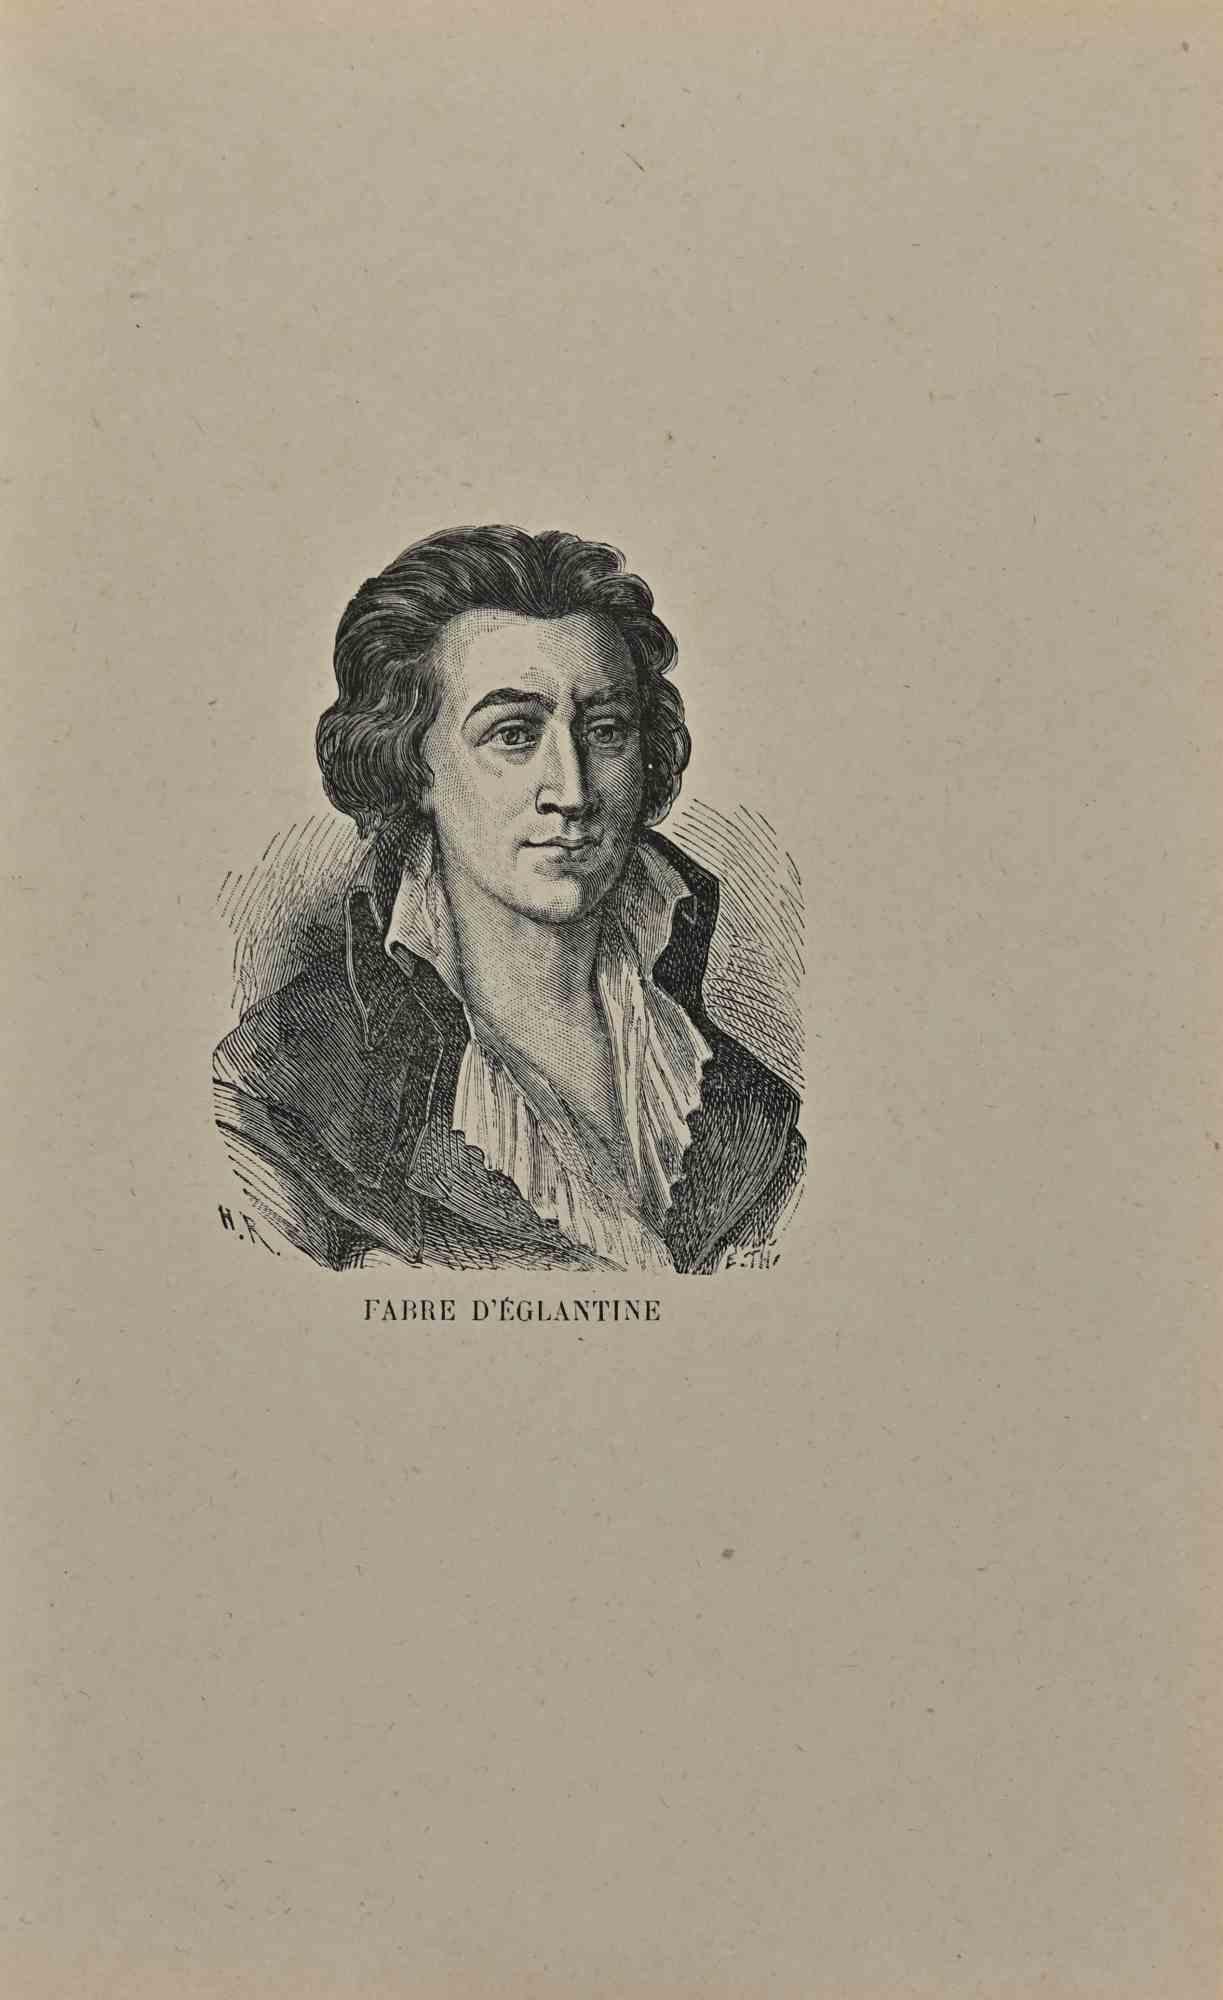 Unknown Portrait Print – Porträt von  Lithographie von Fabre d'Eglantine – frühes 19. Jahrhundert